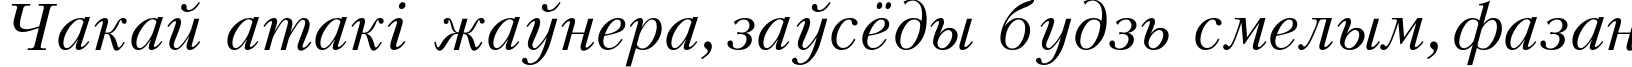 Пример написания шрифтом Kudriashov Italic текста на белорусском